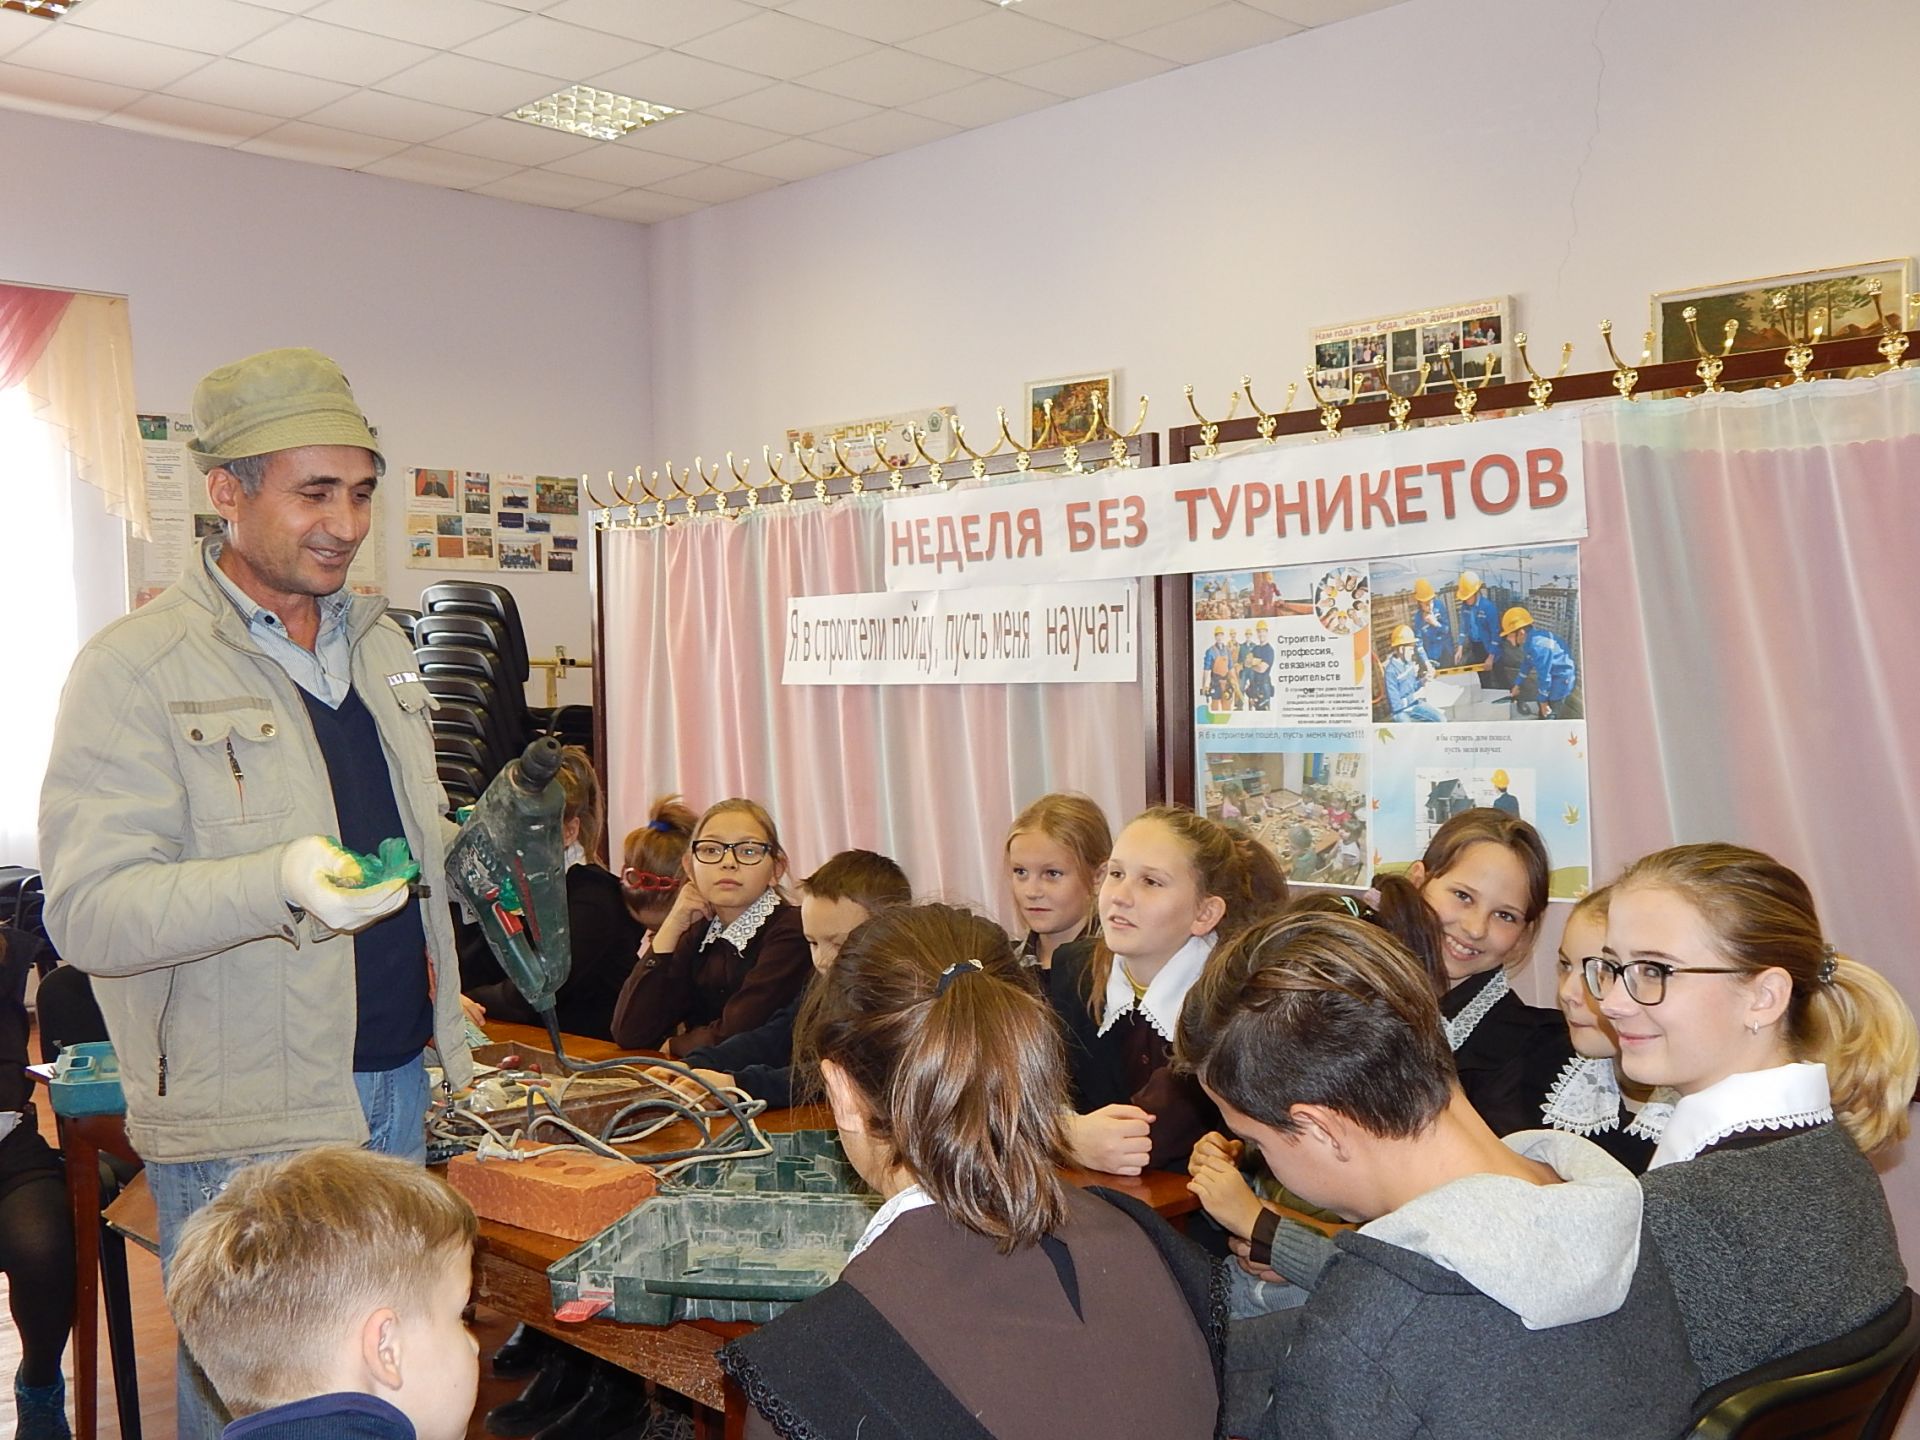 Молодежь Алексеевского района участвует в профориентационной акции "Неделя без турникета"